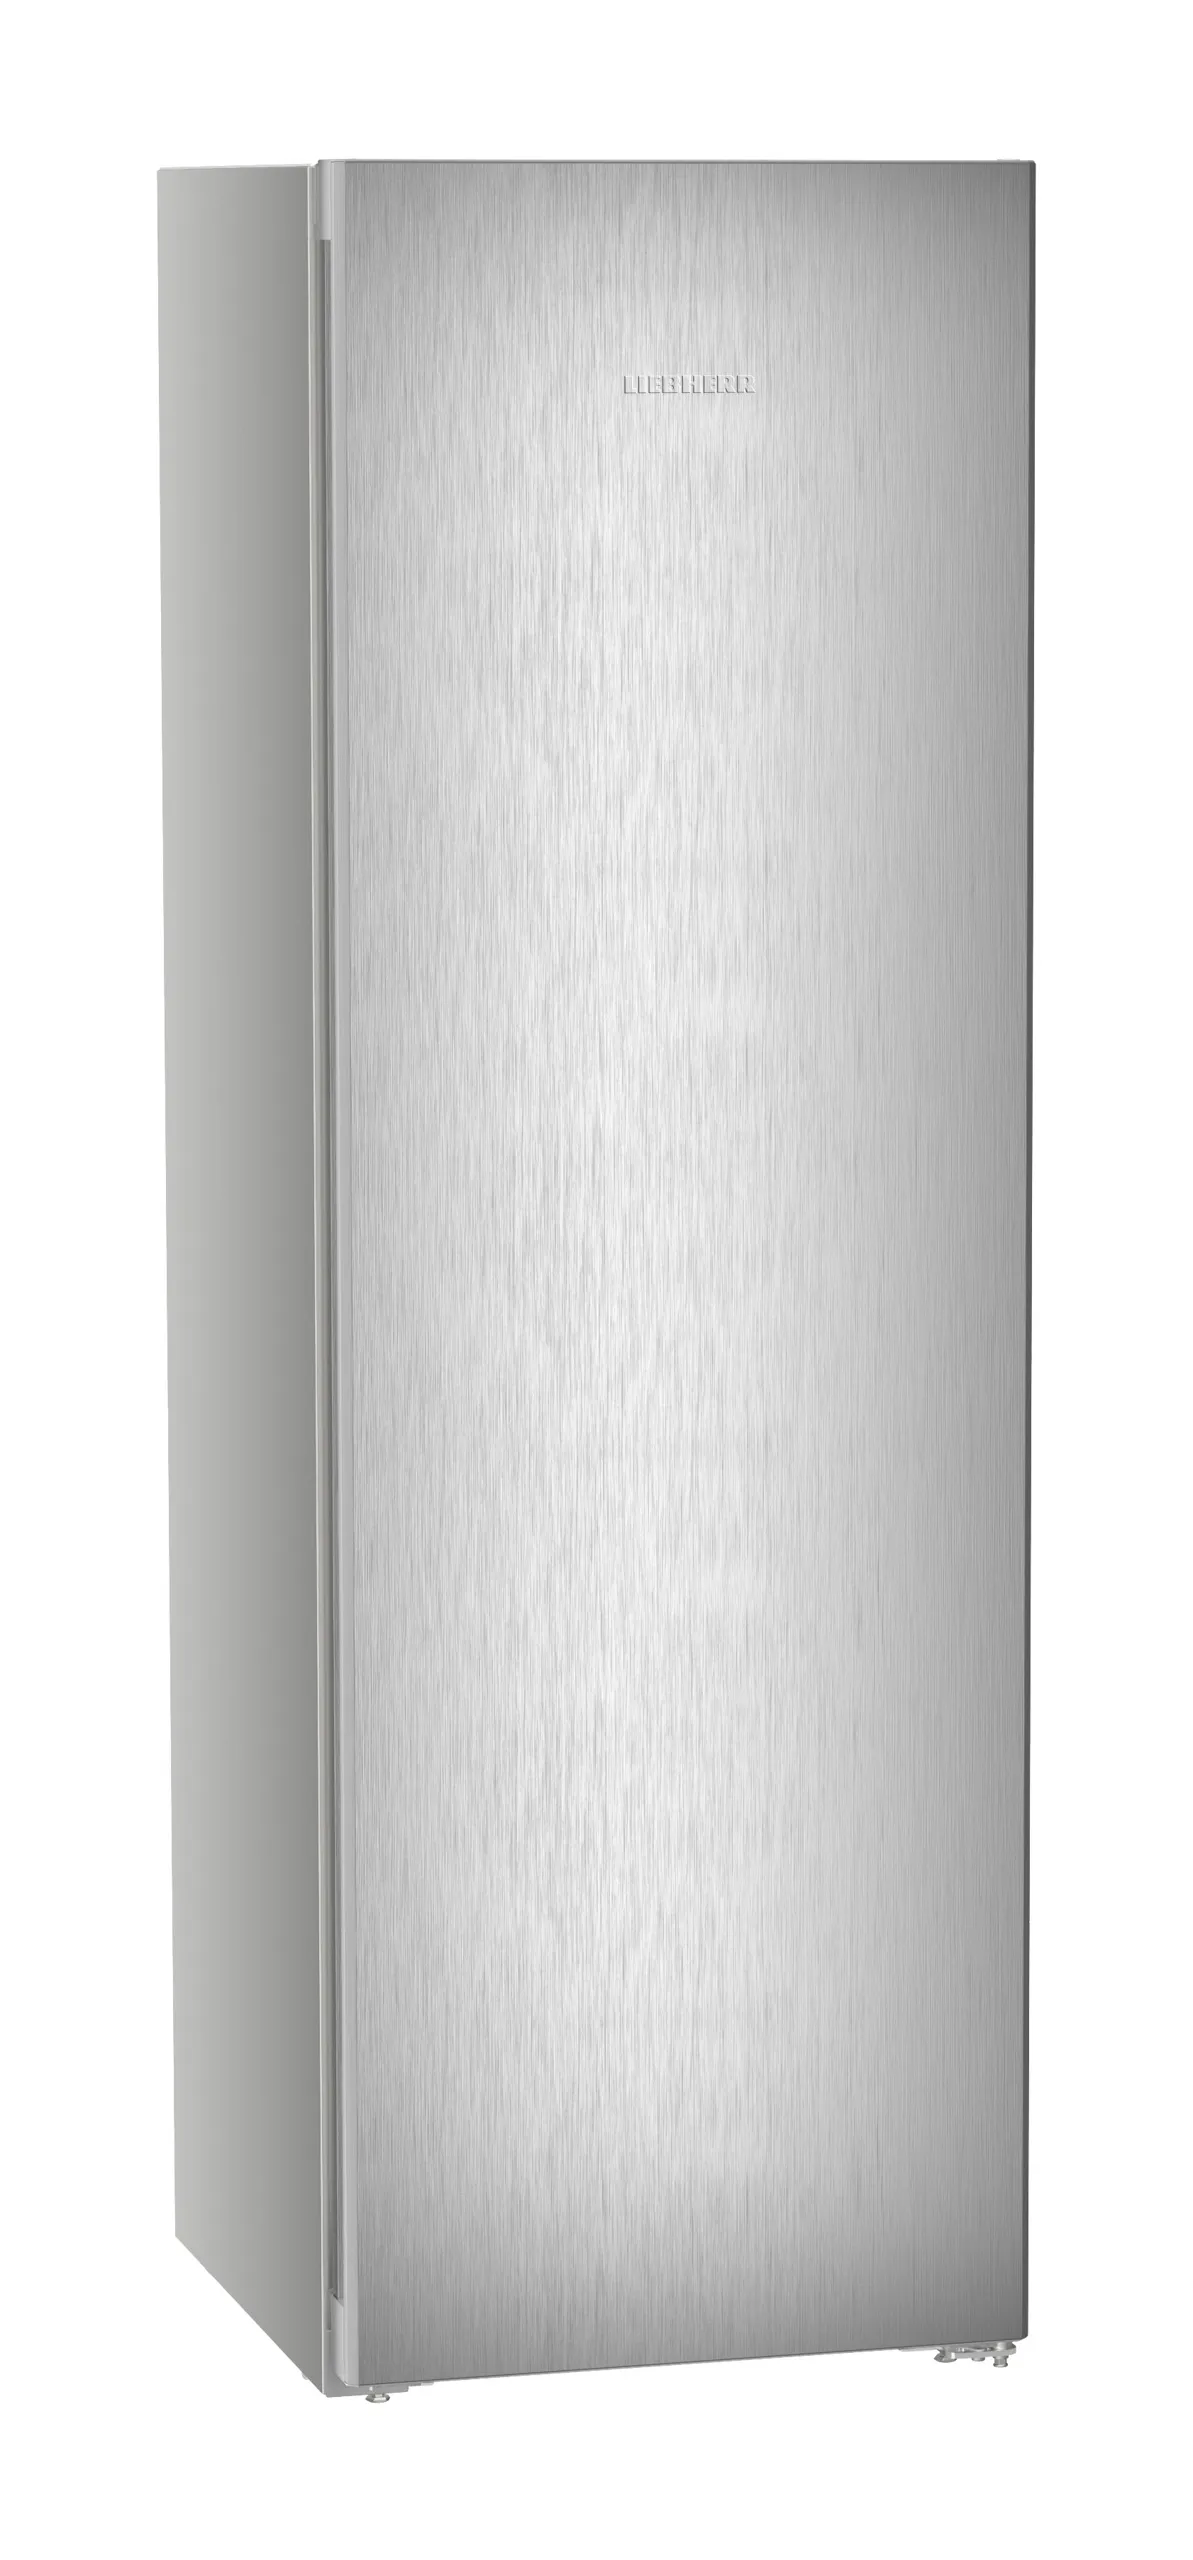 Single door refrigerator 60 cm RBsfe 5221 Liebherr